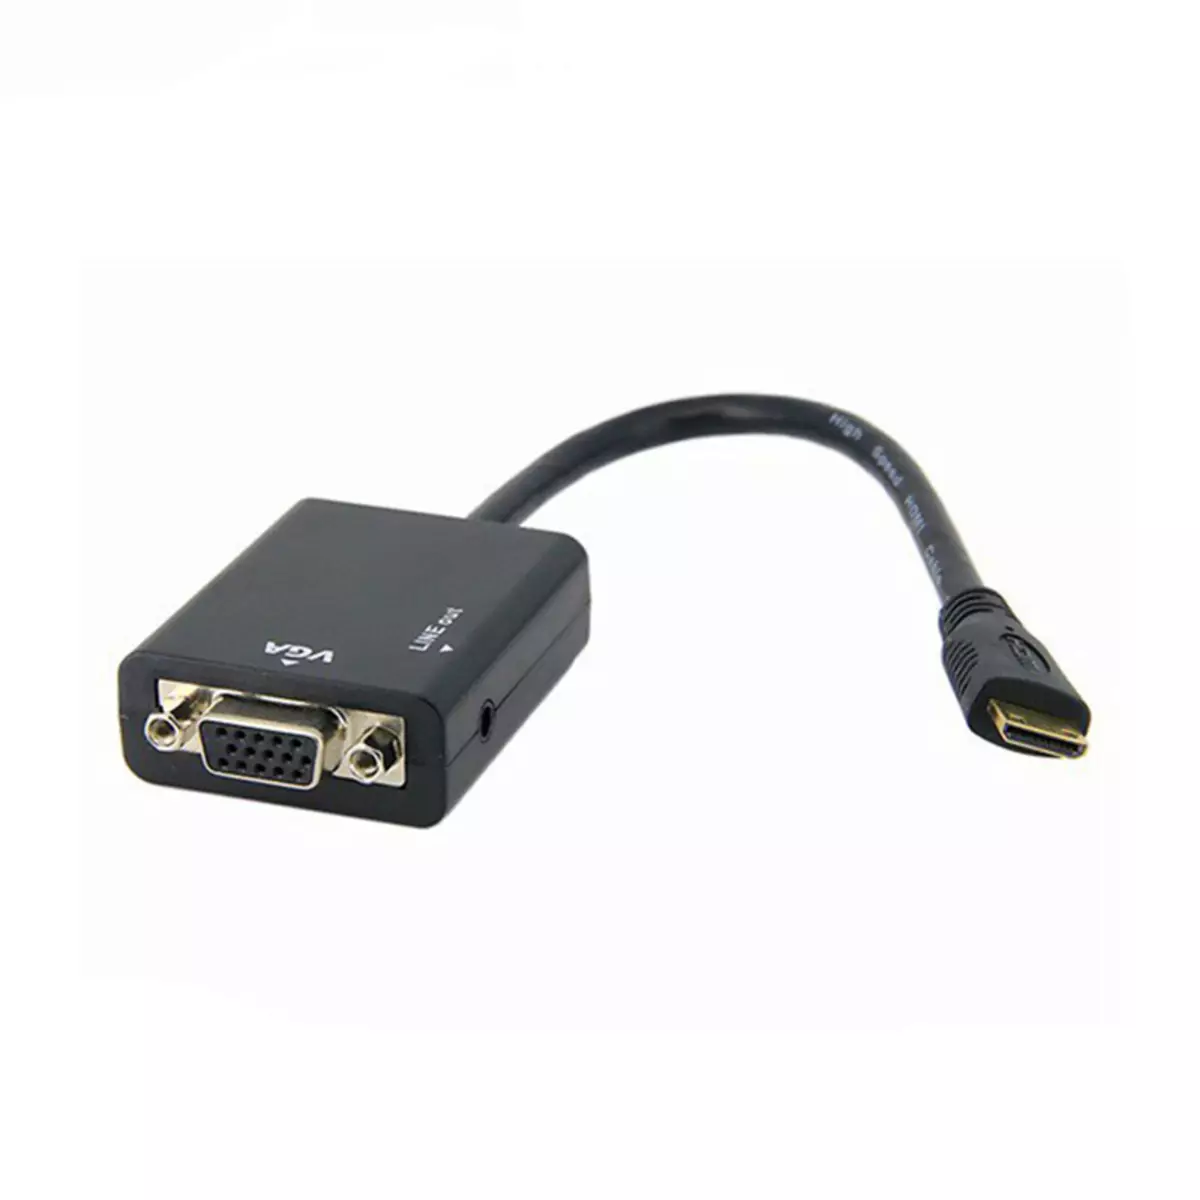 I-HDMI-VGA ADAPTER